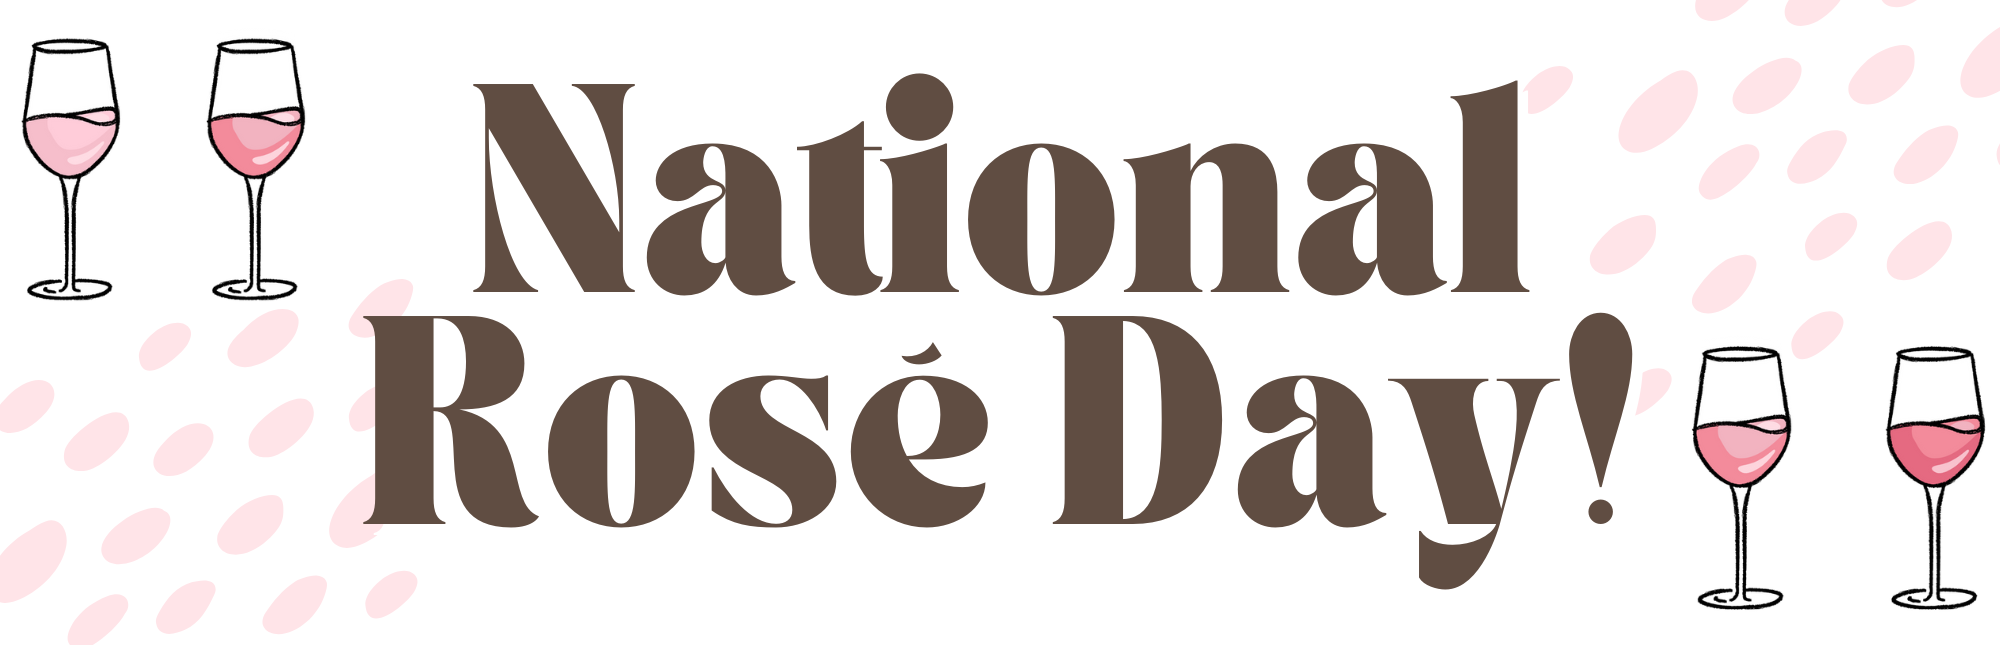 National Rose Day Banner Luekens Wine & Spirits